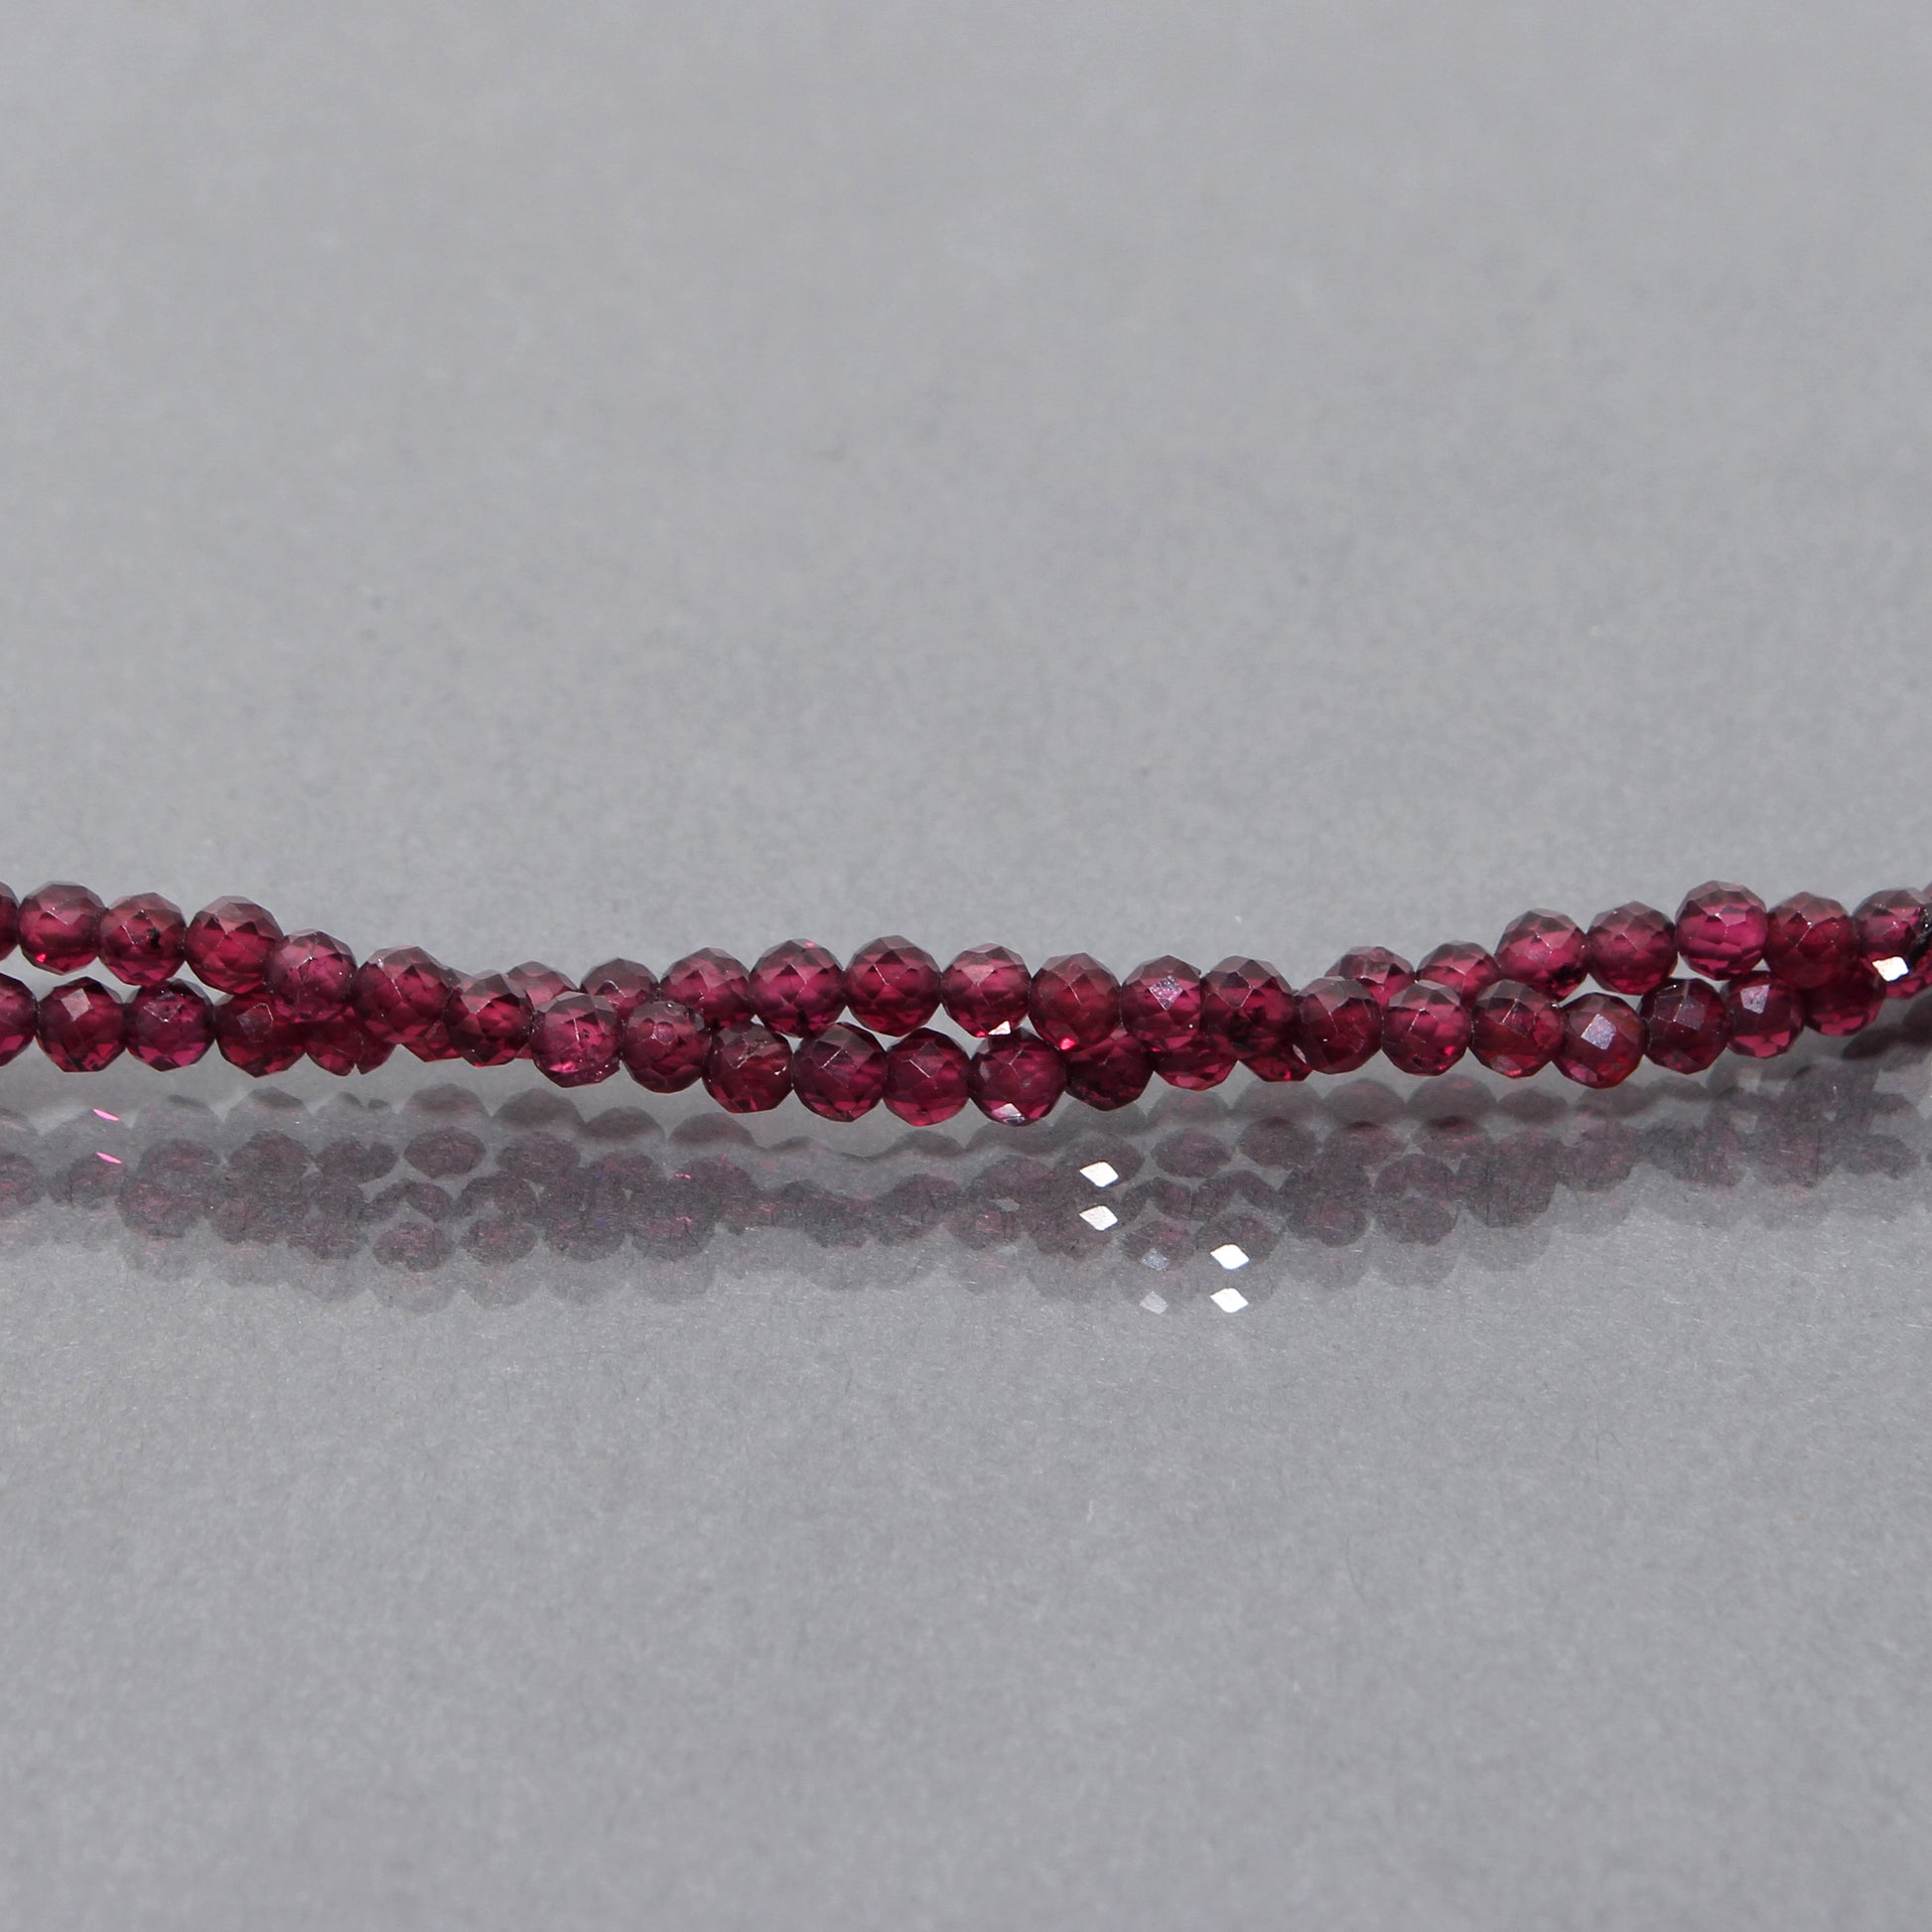  Rhodolite Garnet faceted beads necklace